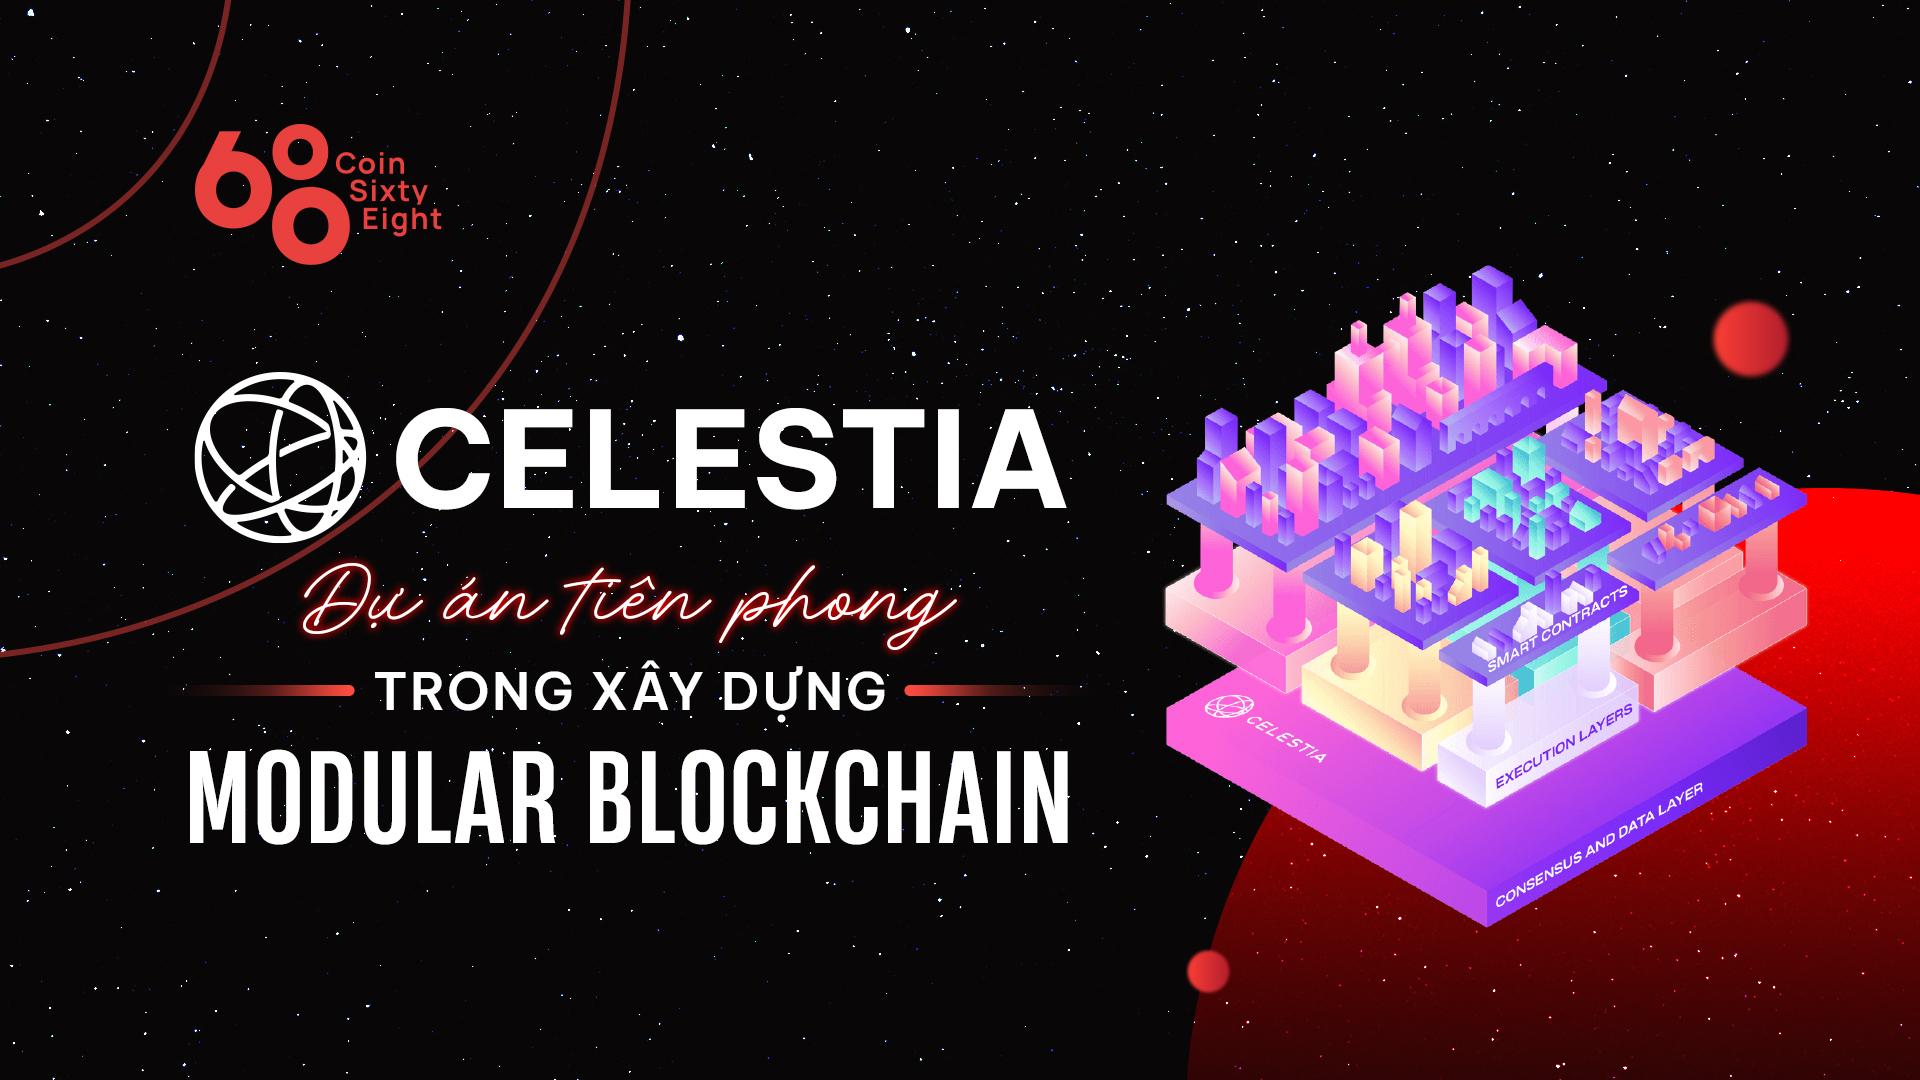 celestia-la-gi-tim-hieu-ve-du-an-tien-phong-trong-xay-dung-modular-blockchain